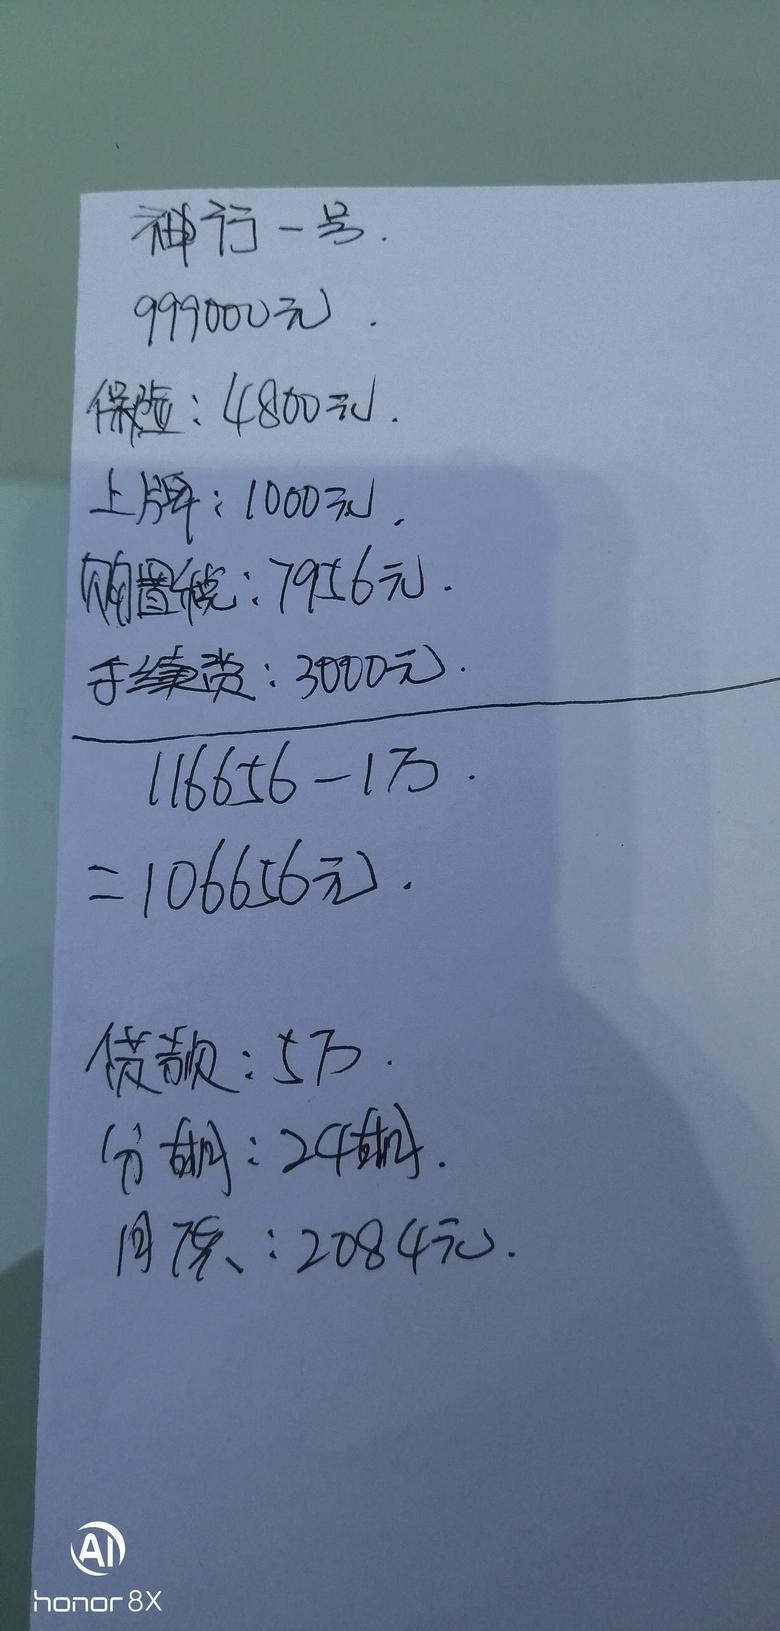 瑞虎7今天去深圳沙井奇瑞4s店。没人接待，没人搭理，唉?！就这样找了个人，随便给我一算结束了！